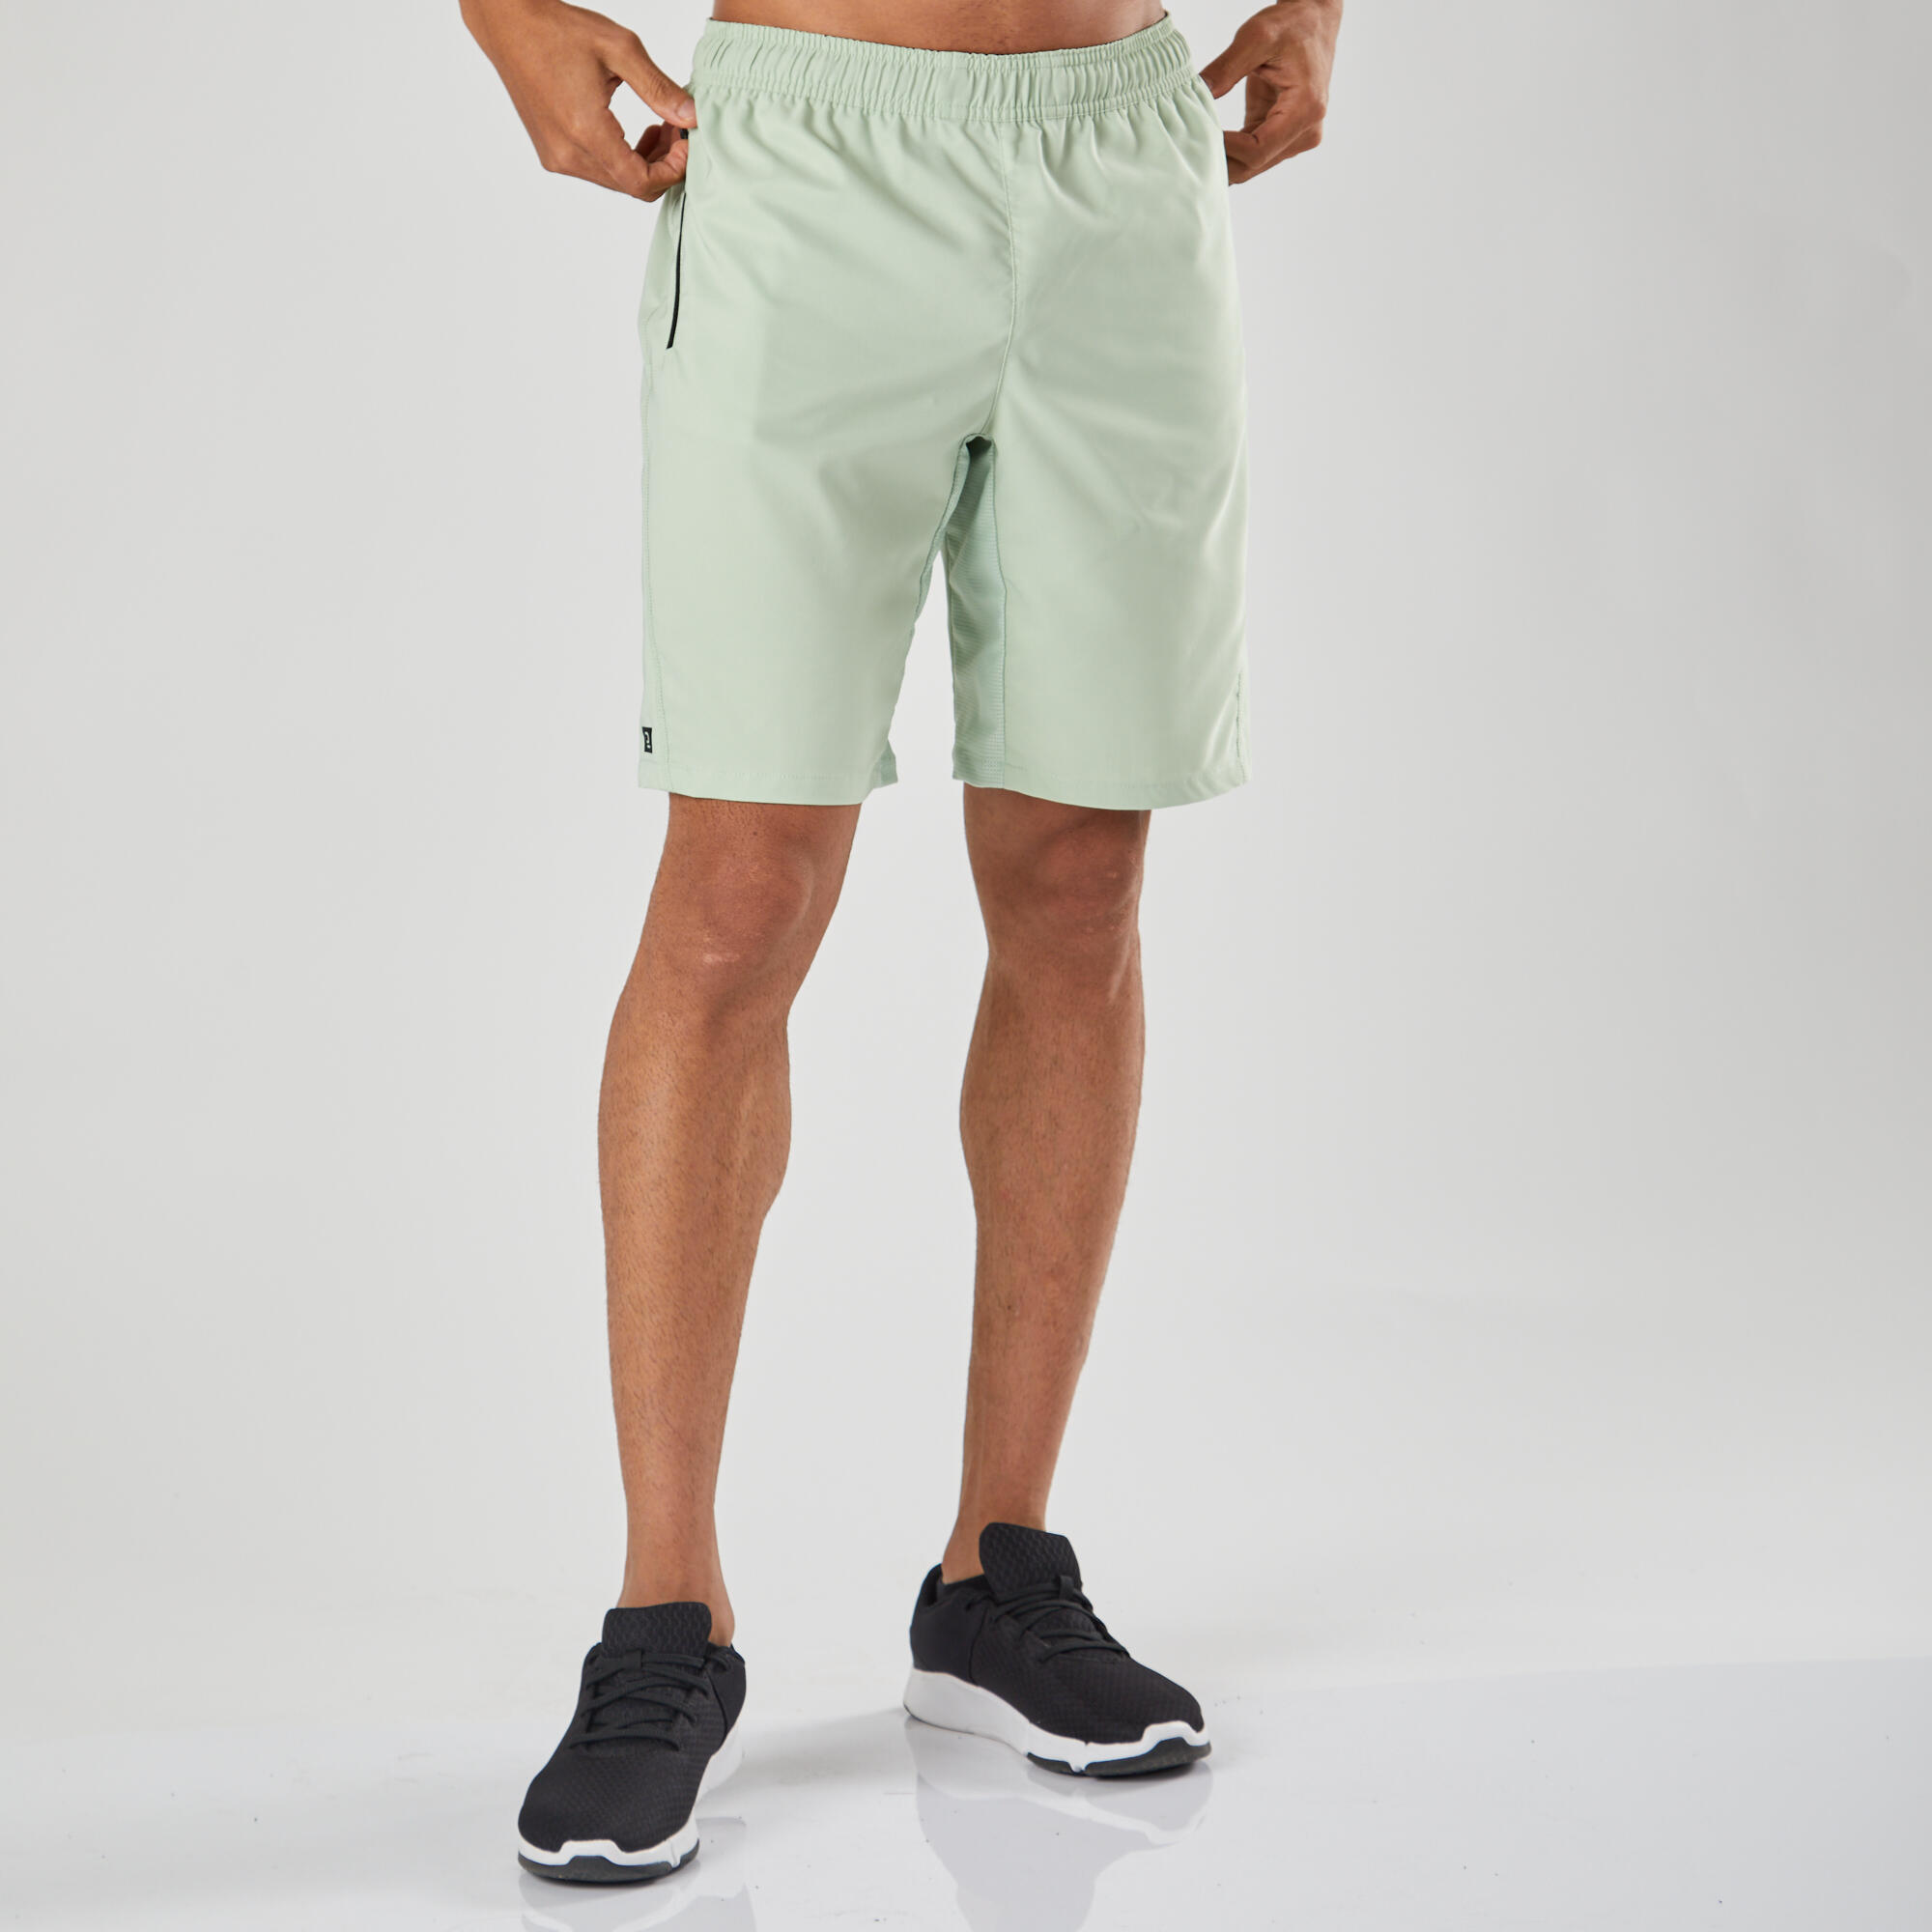 Pantalon scurt 120 Fitness Essentiel buzunare cu fermoare Verde Barbati image9